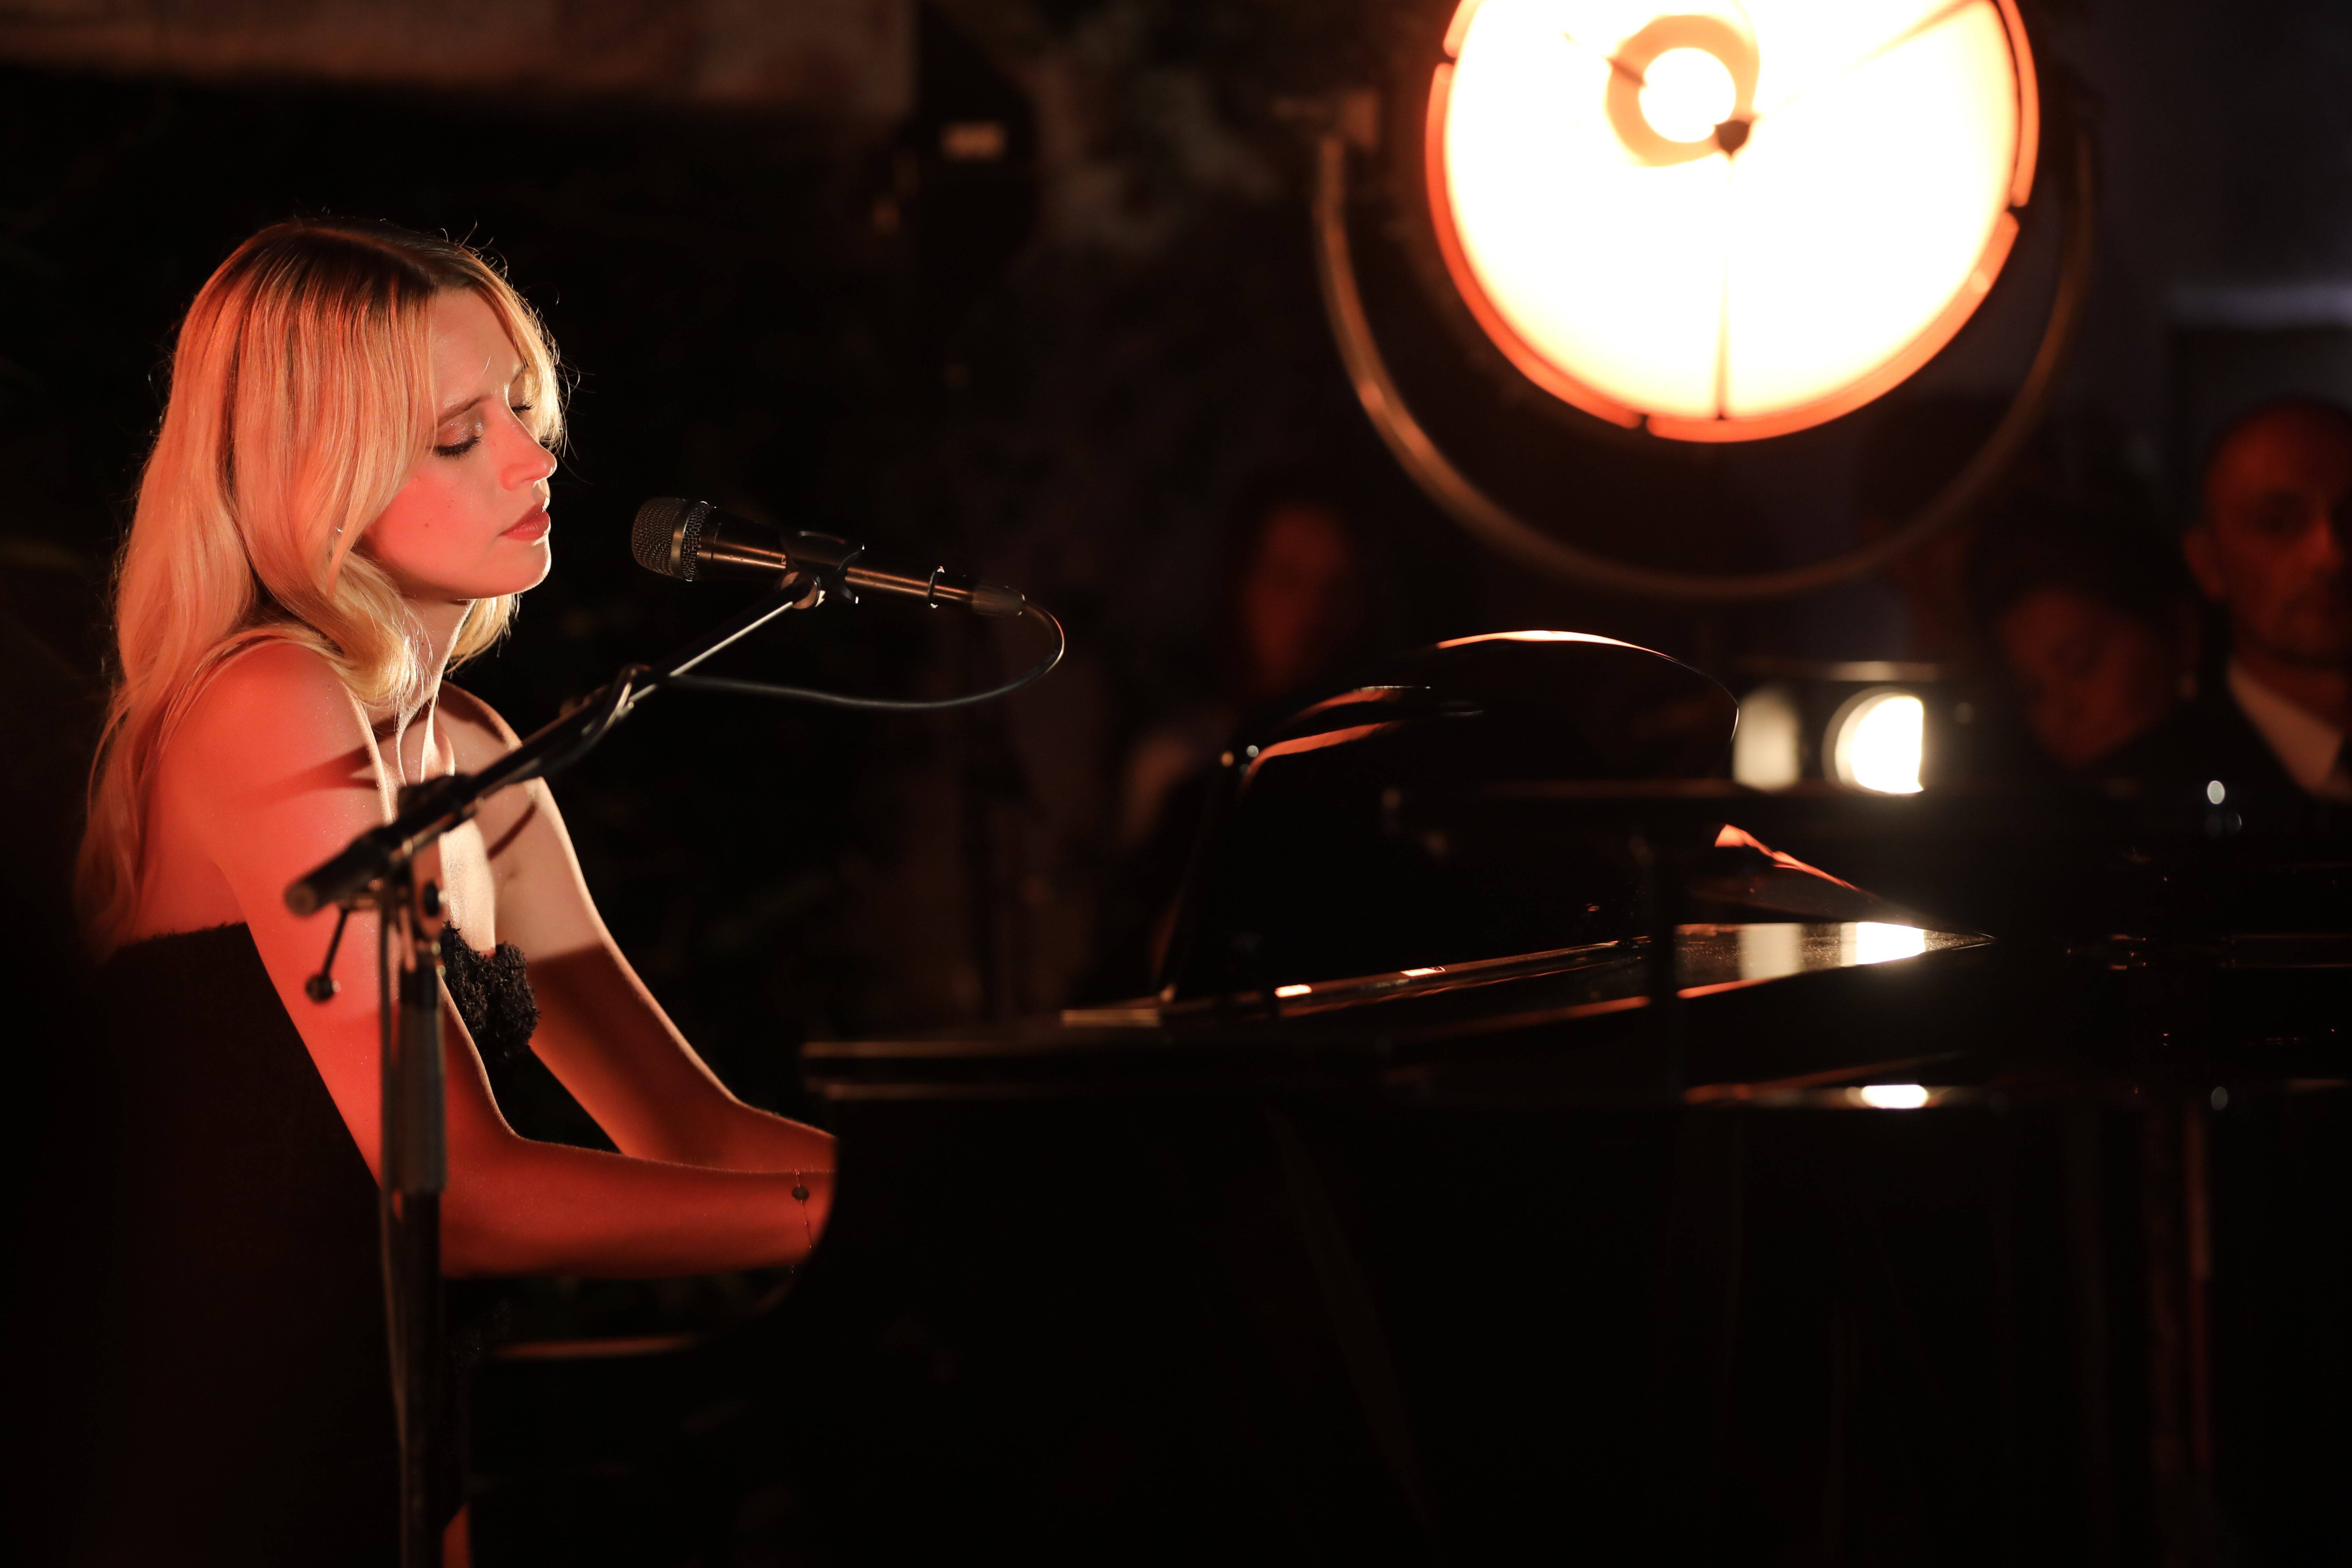 La chanteuse Angèle défile en piano solo pour Chanel à Saint-Tropez -  Var-Matin